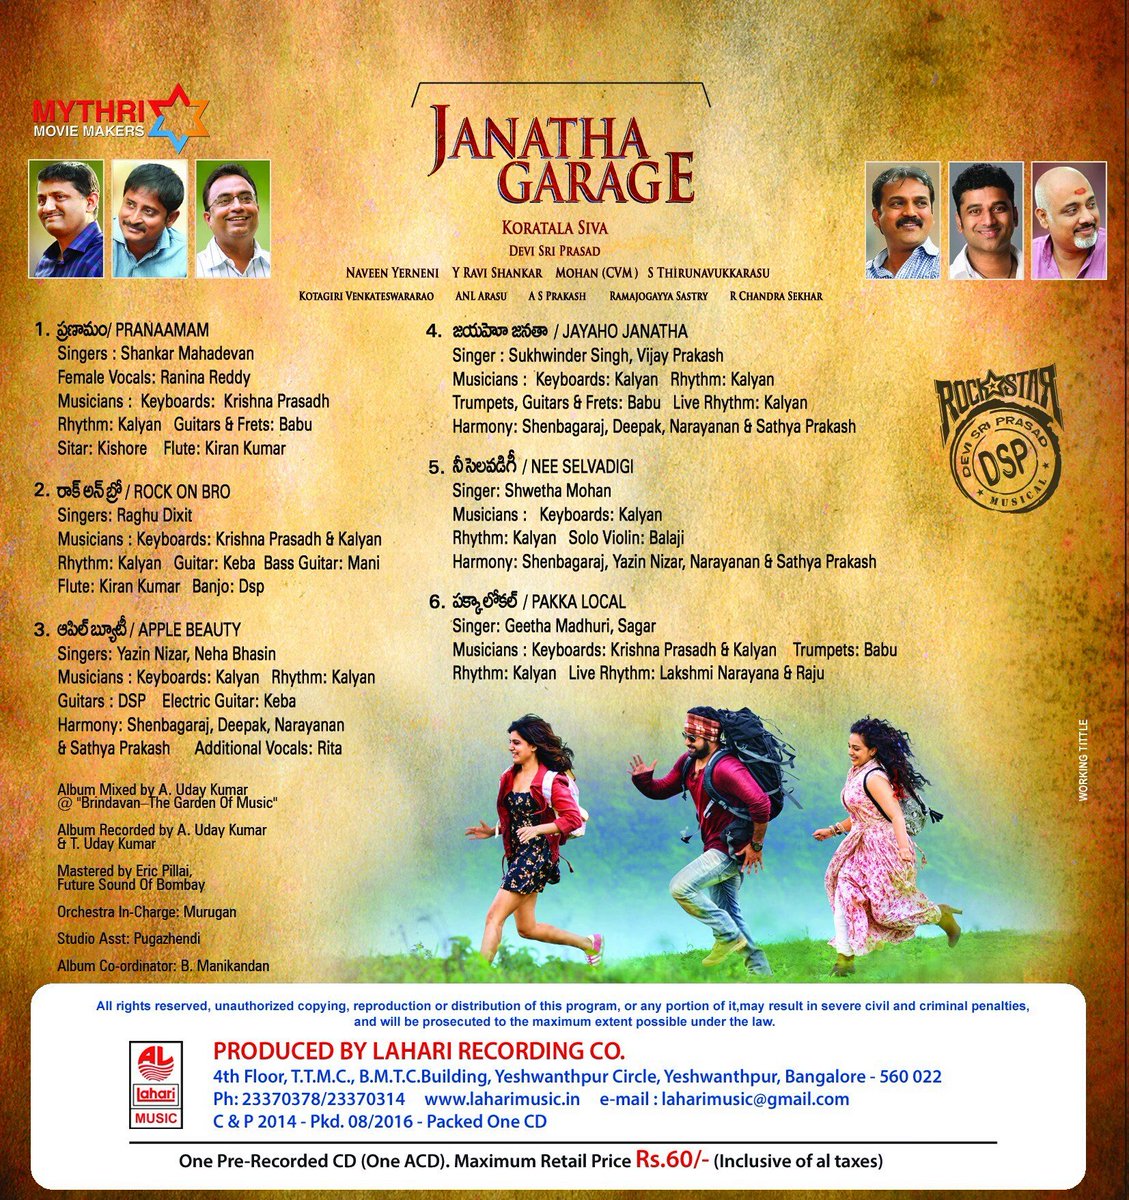 Janatha Garage track list